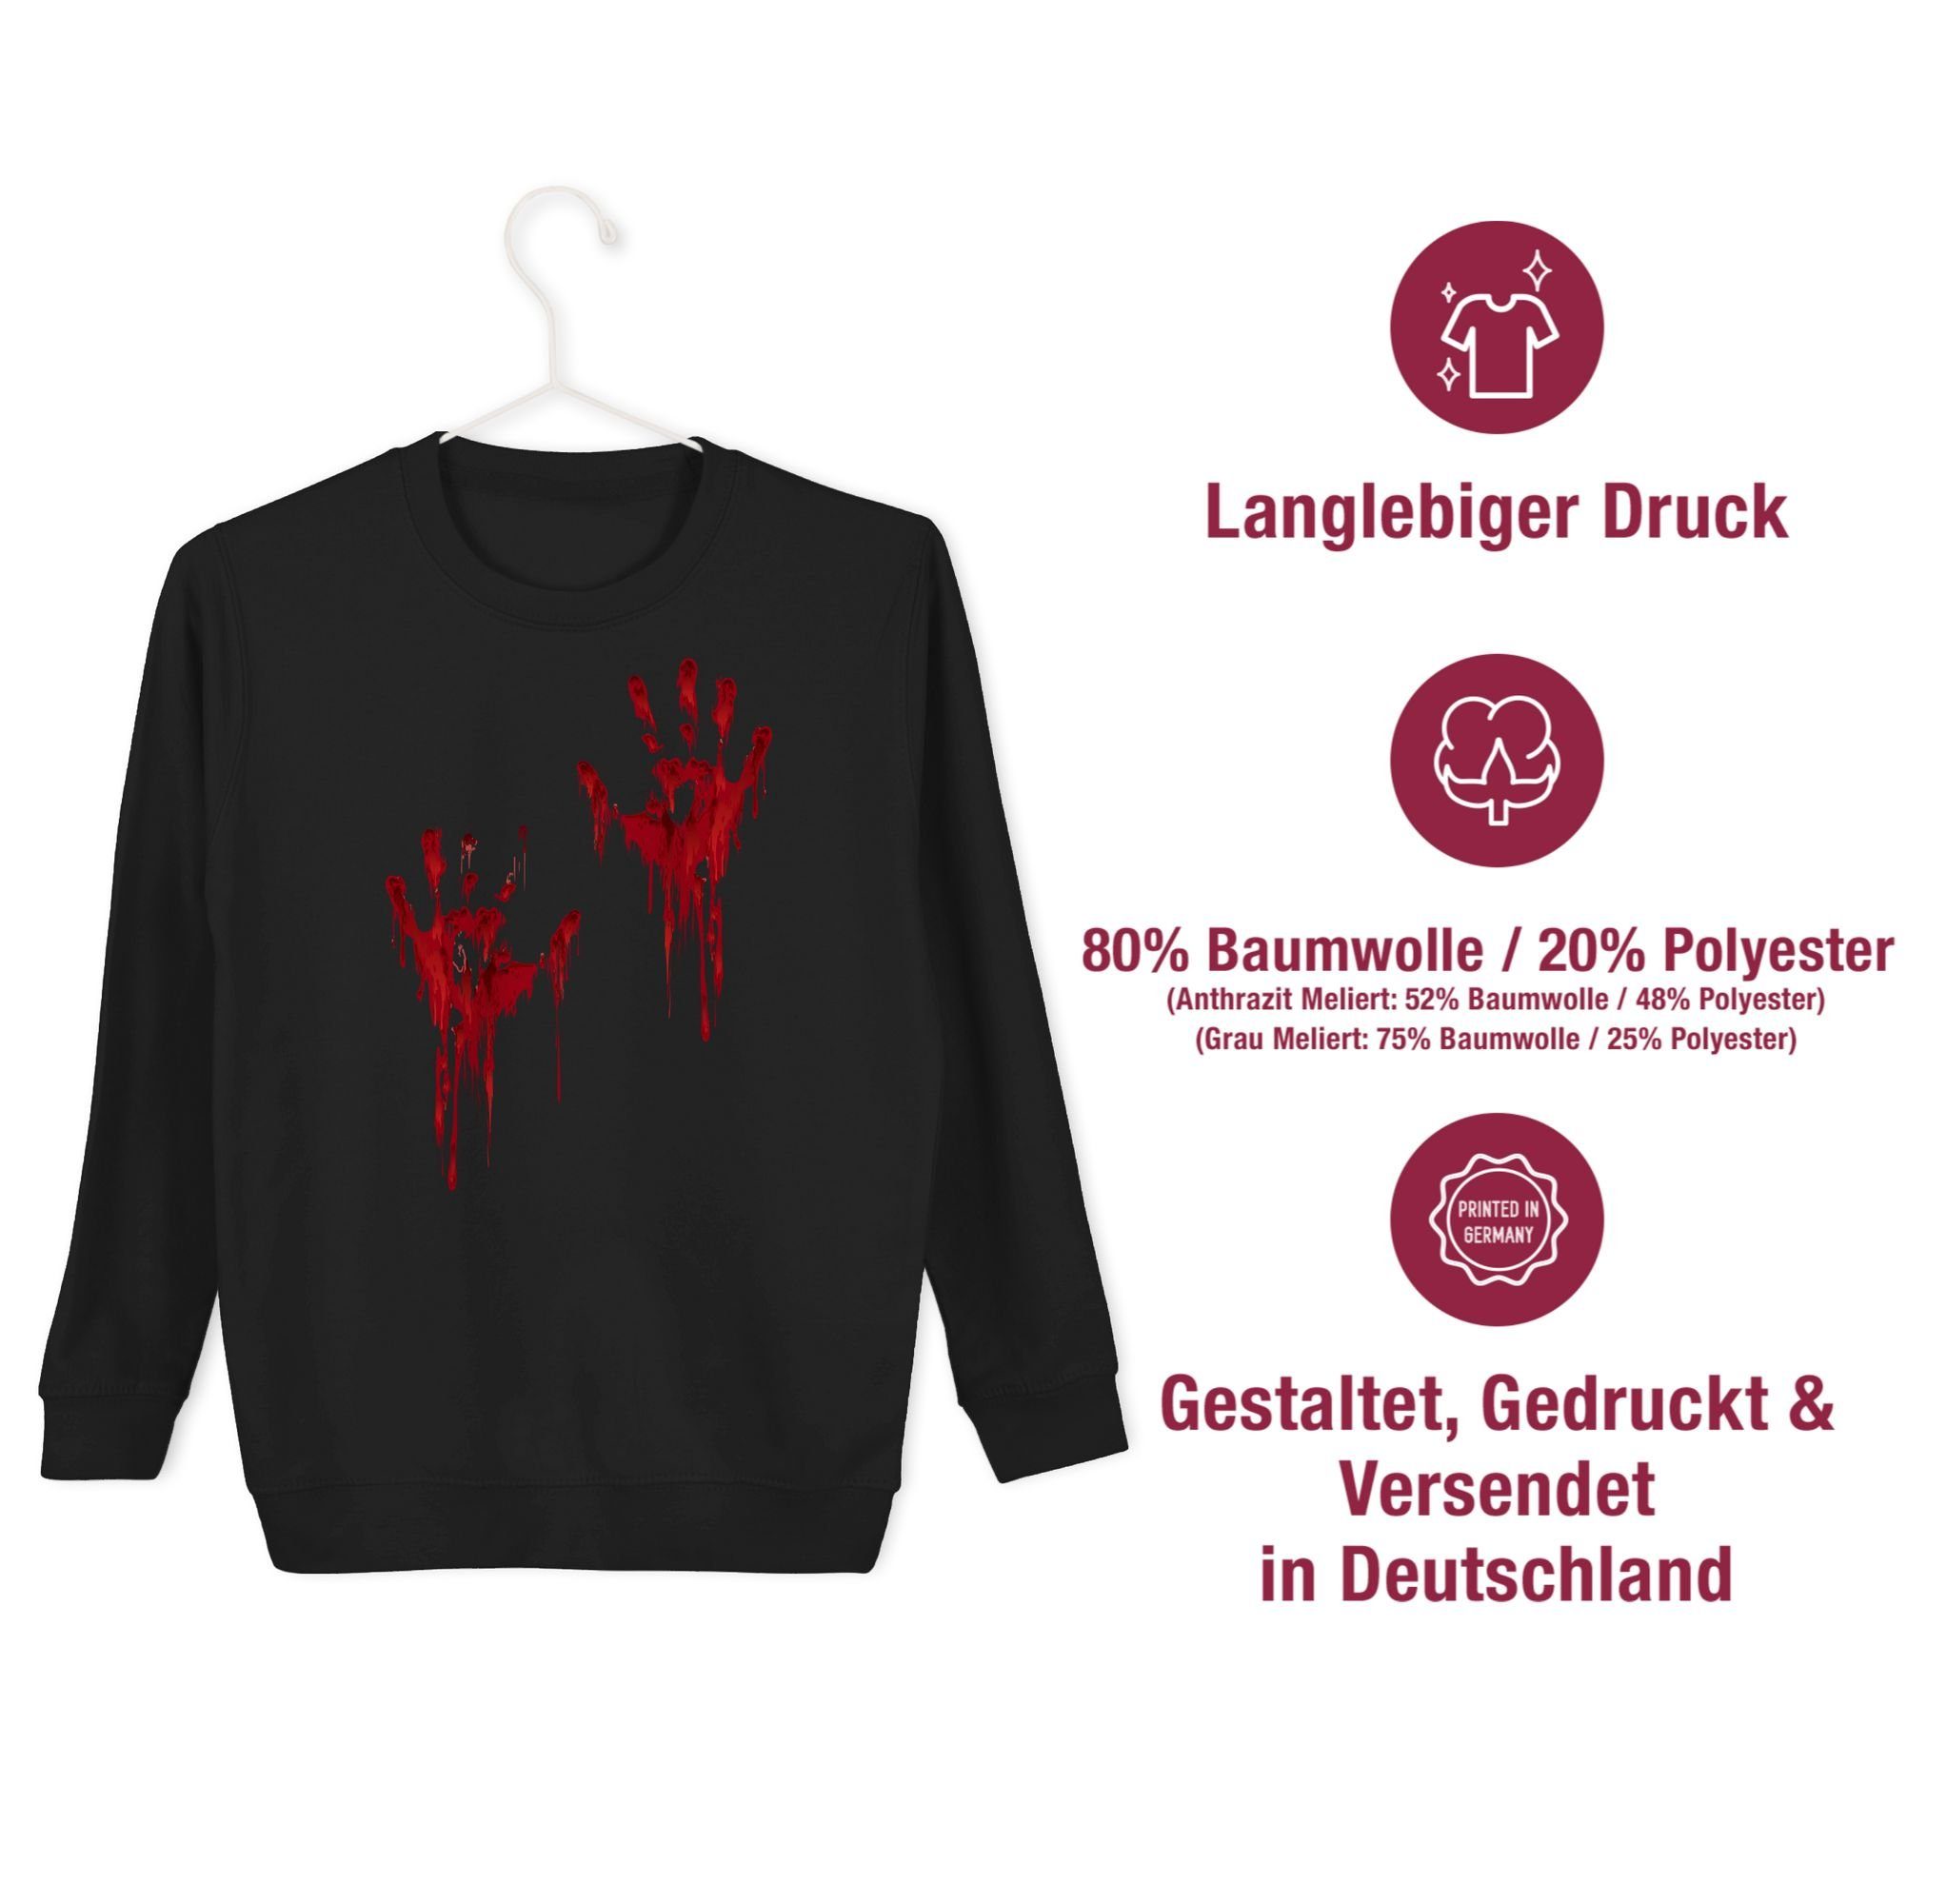 Blutverschmiert Sweatshirt Hände Handabdruck für Kinder Kostüme Blutige H Shirtracer Schwarz Blutiges Blutspritzer Blut 1 Halloween